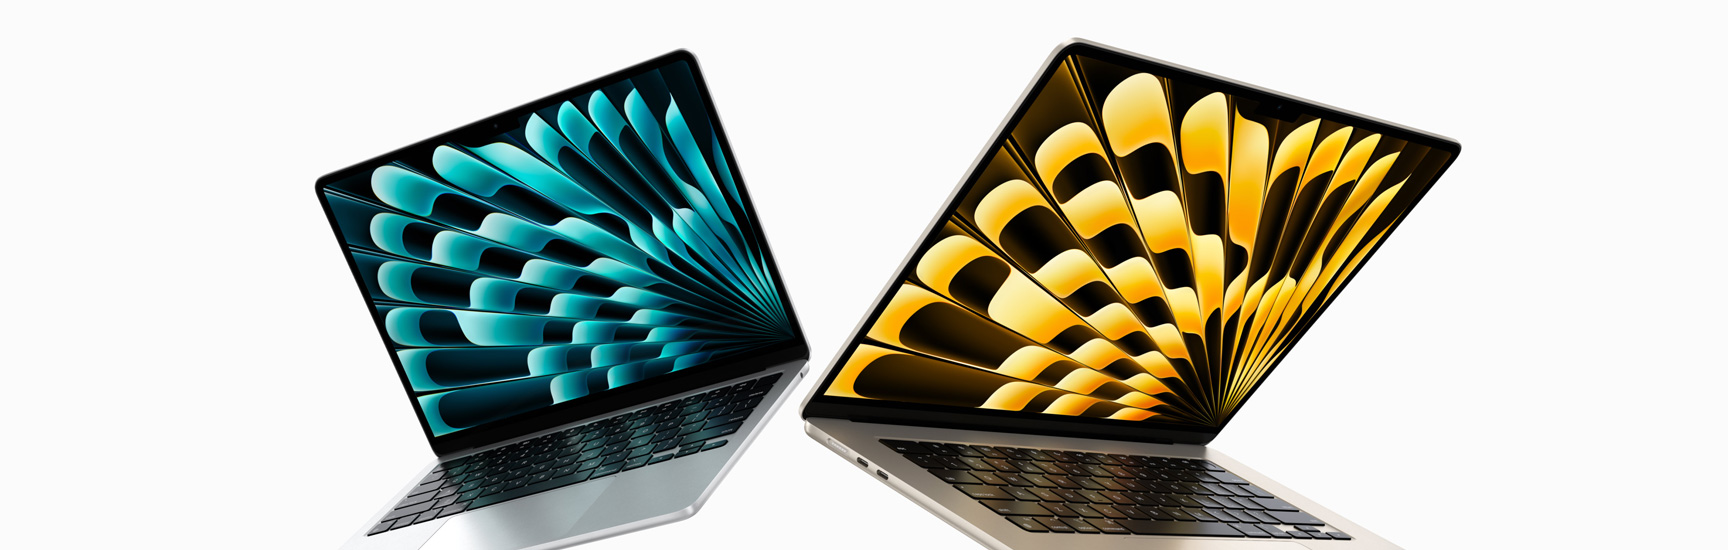 Vorderansicht von halb geöffneten 13" und 15" MacBook Air Modellen in Silber und Polarstern, die Unterschiede bei der Displaygrösse zeigen.